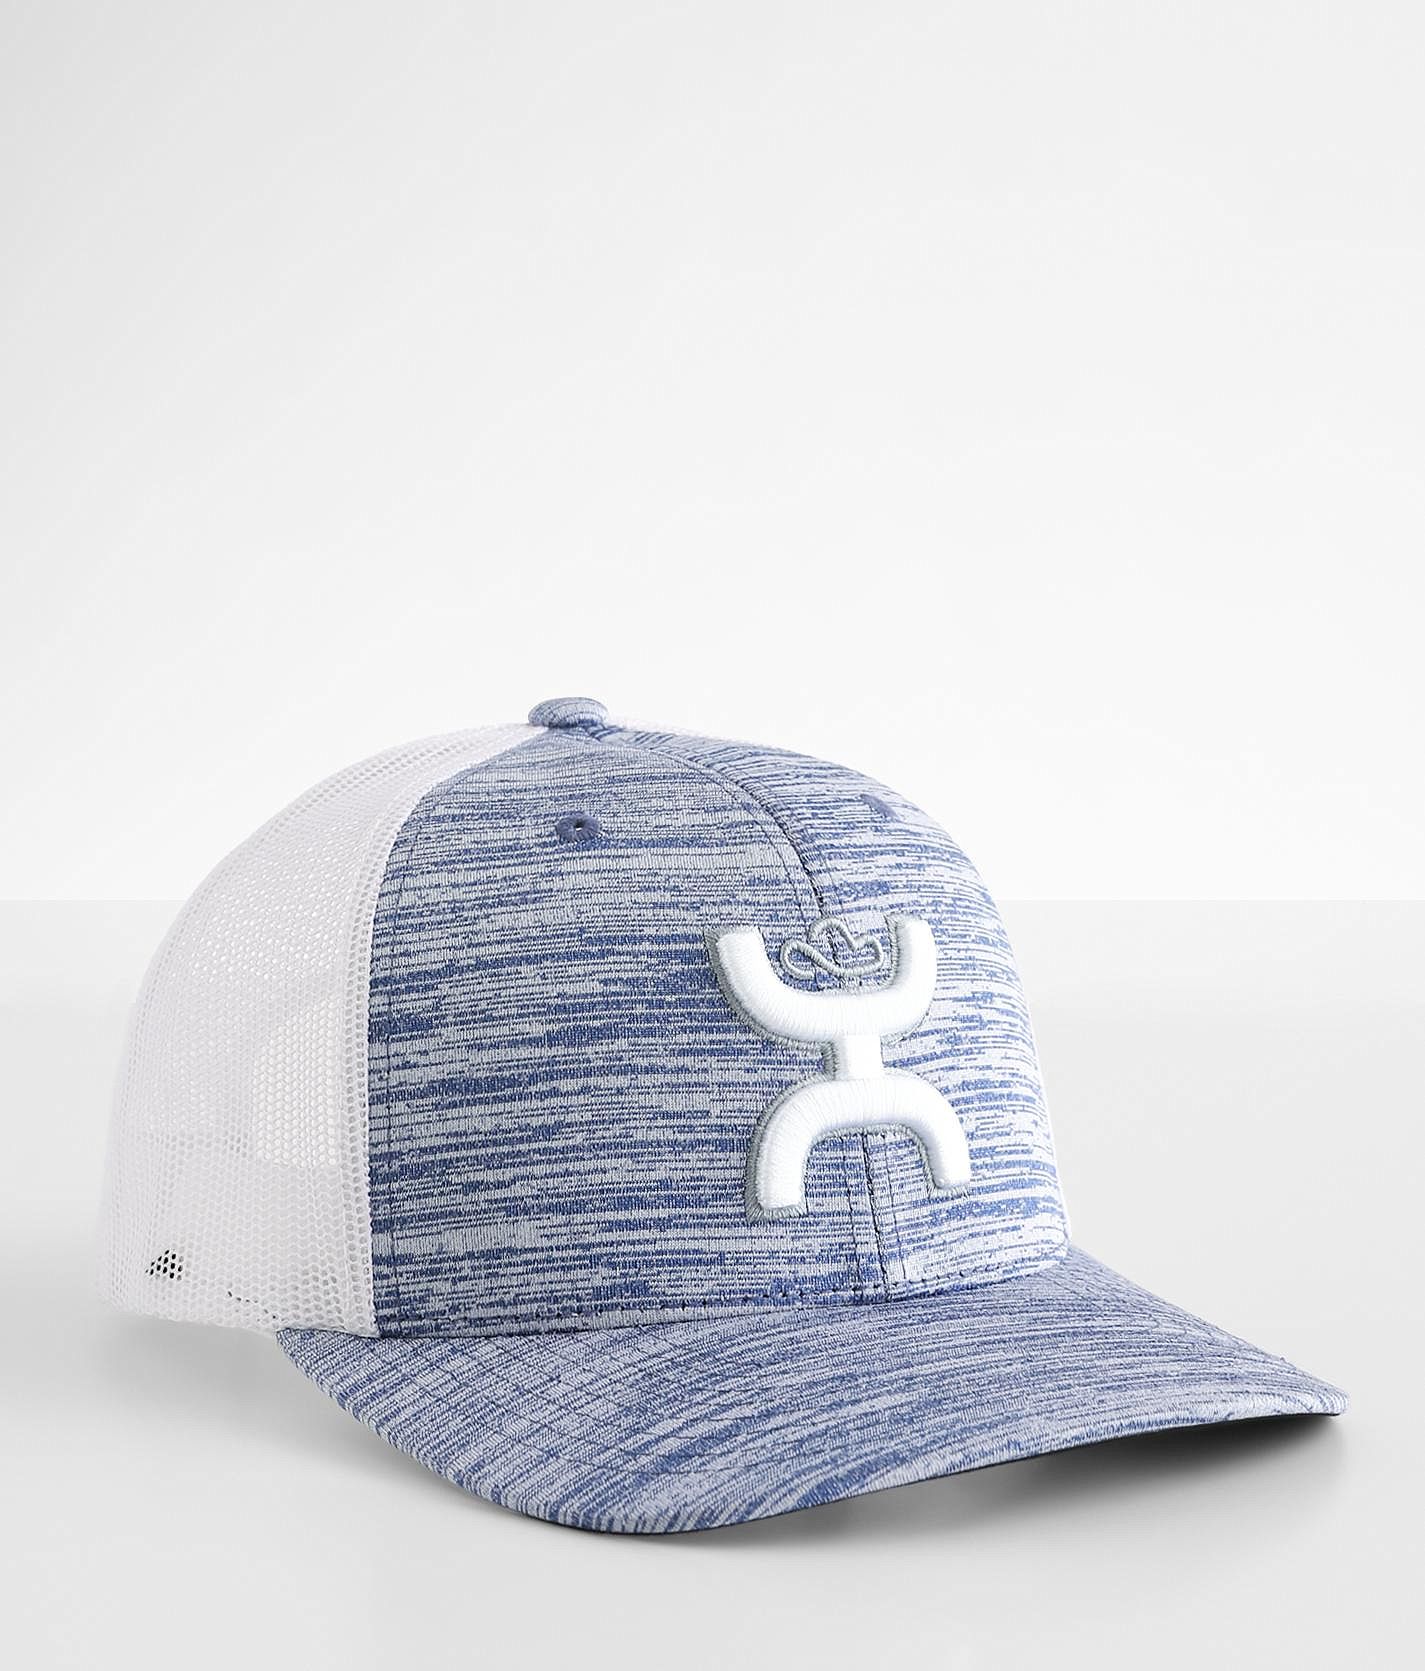 Hooey Sterling Trucker Hat - Men's Hats in Blue White | Buckle